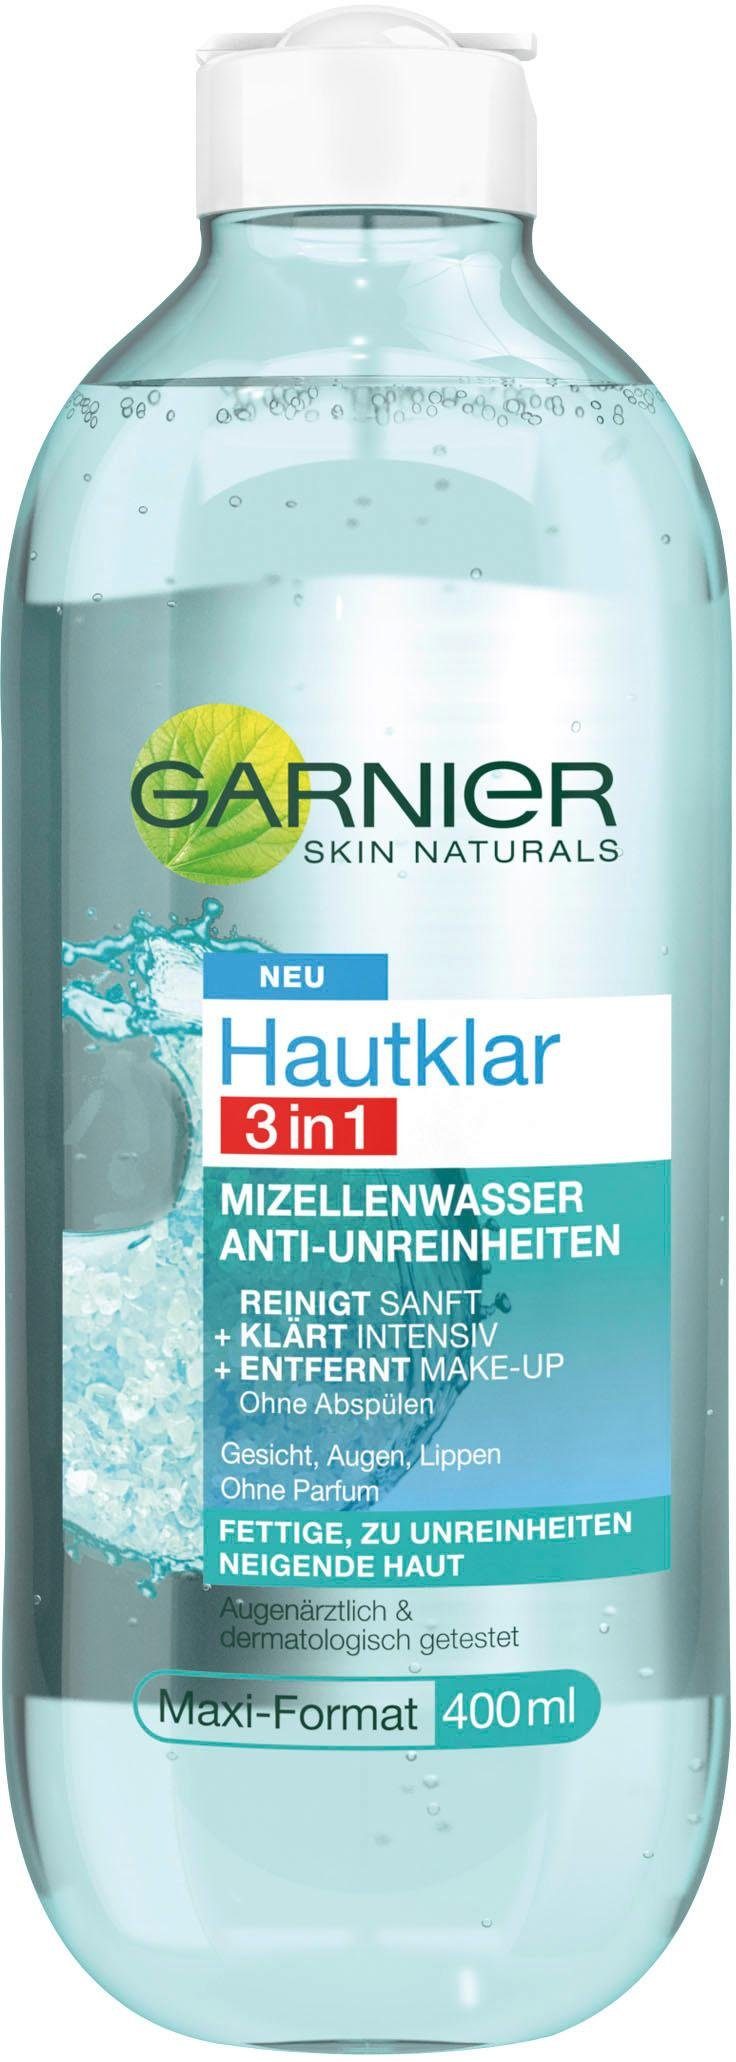 Gesichtswasser Mizellenwasser Hautklar GARNIER 3in1